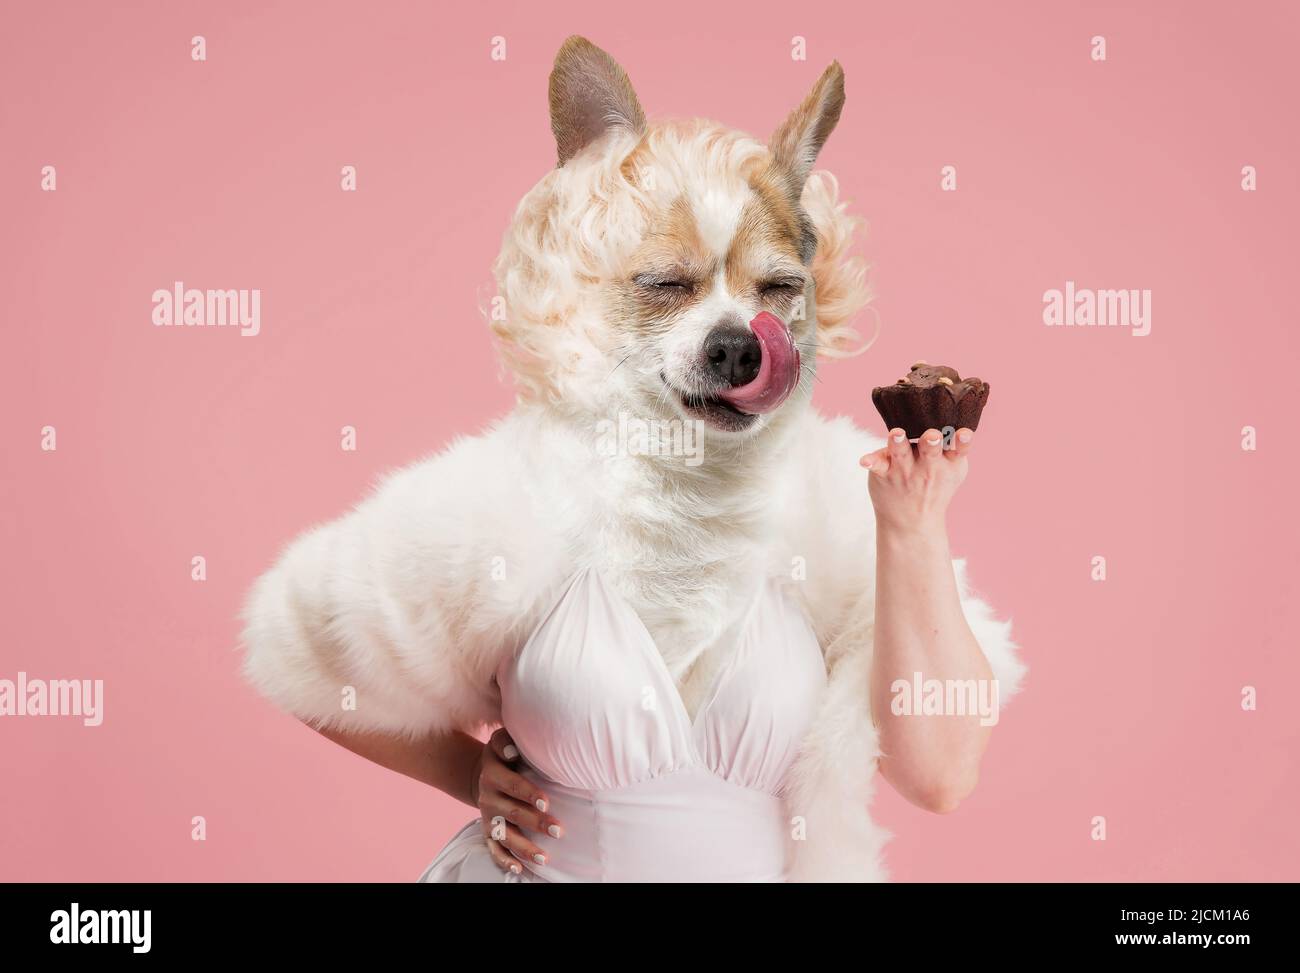 Bonbons. Élégante belle femme modèle portant un ensemble de style rétro dirigé par la tête de chien mignon isolé sur fond rose. Comparaison de l'art, surréalisme Banque D'Images